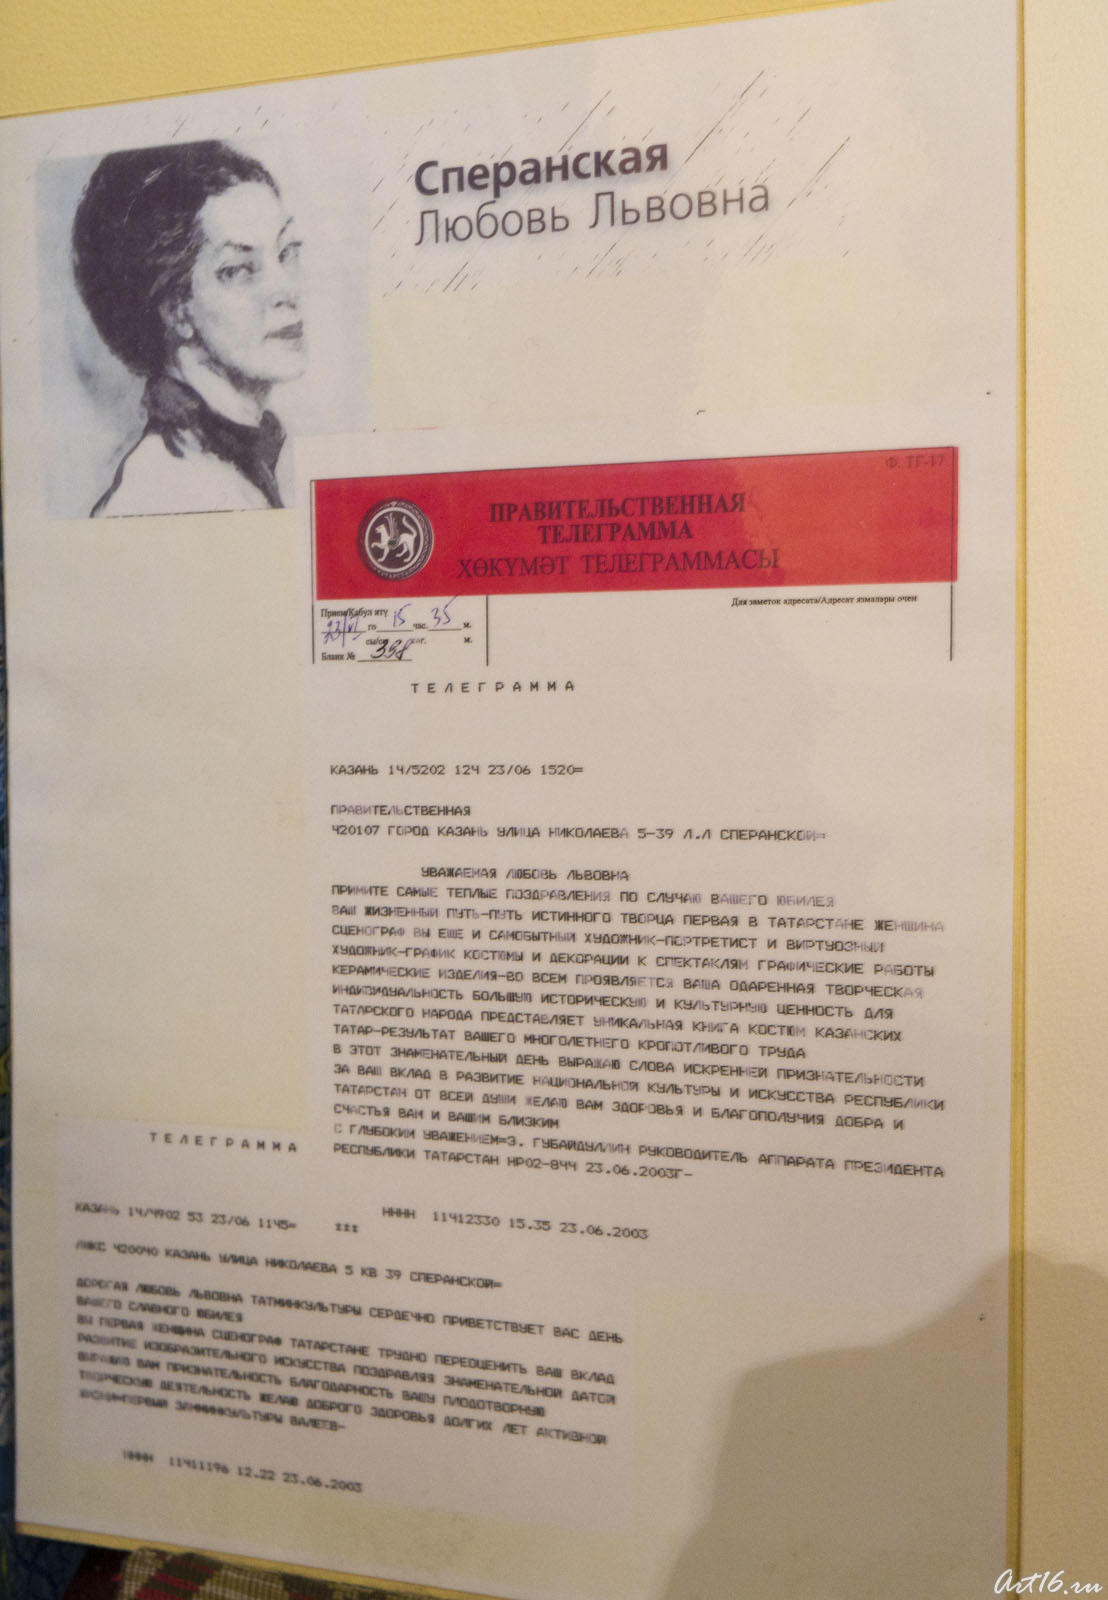 Правительственная телеграмм а, адресованная Л.Л.Сперанской::Любовь Львовна Сперанская